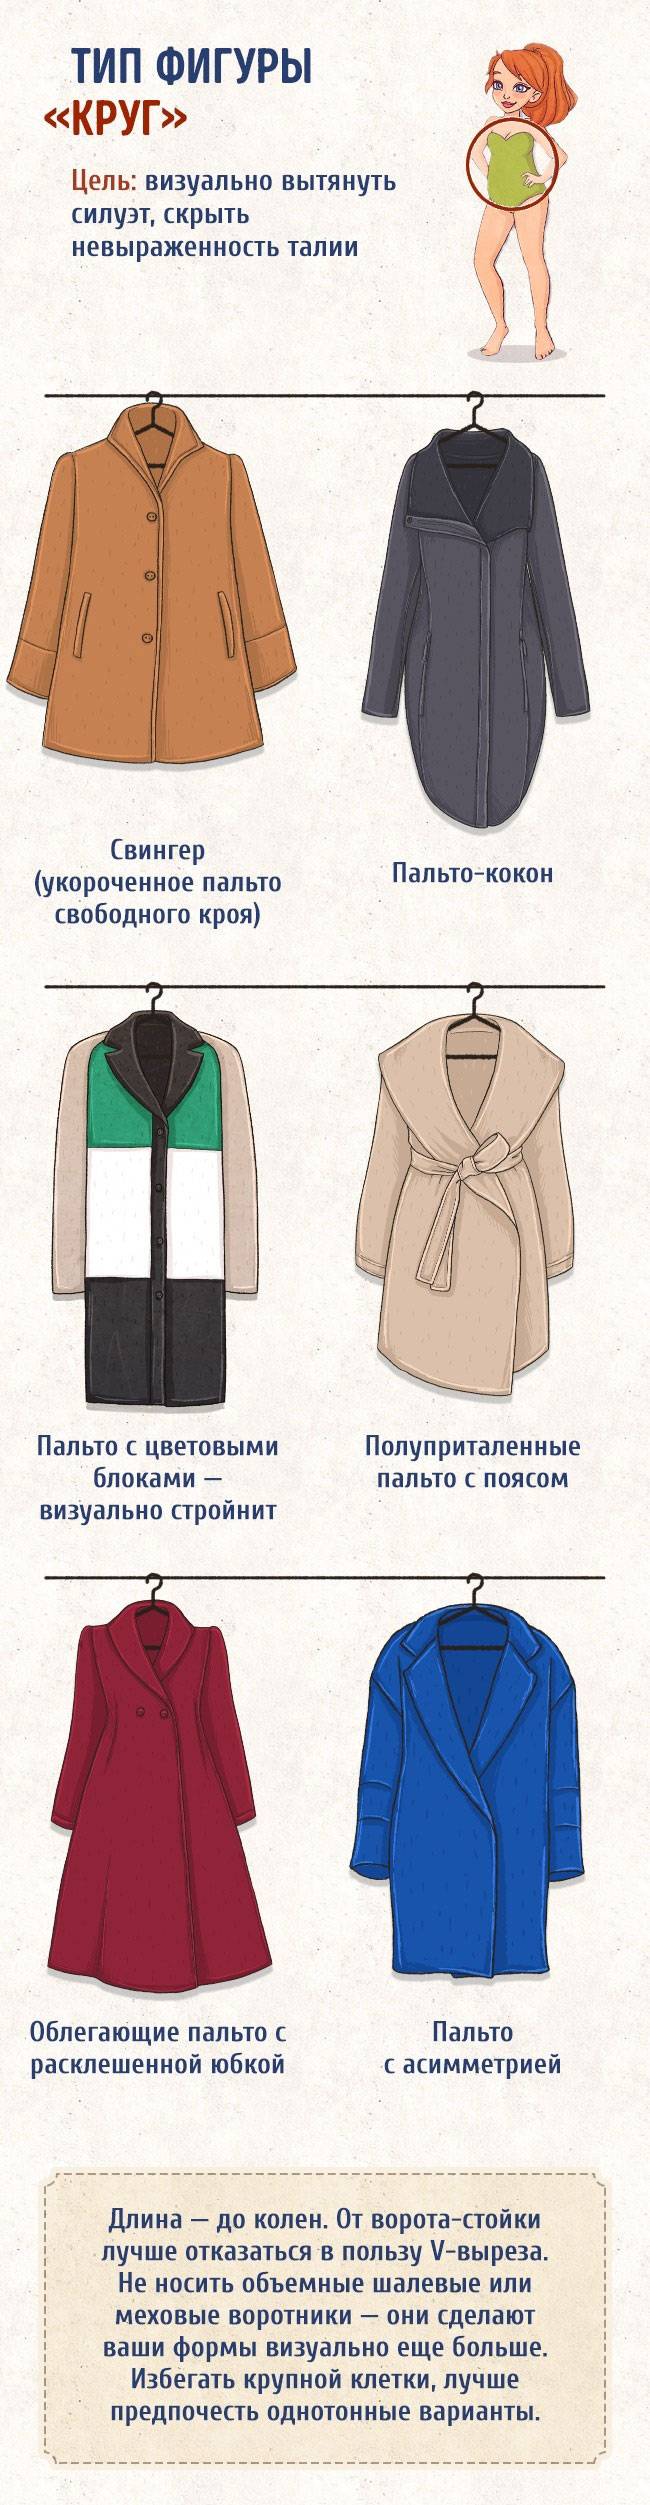 Как подобрать пальто по типу фигуры – в том числе полной